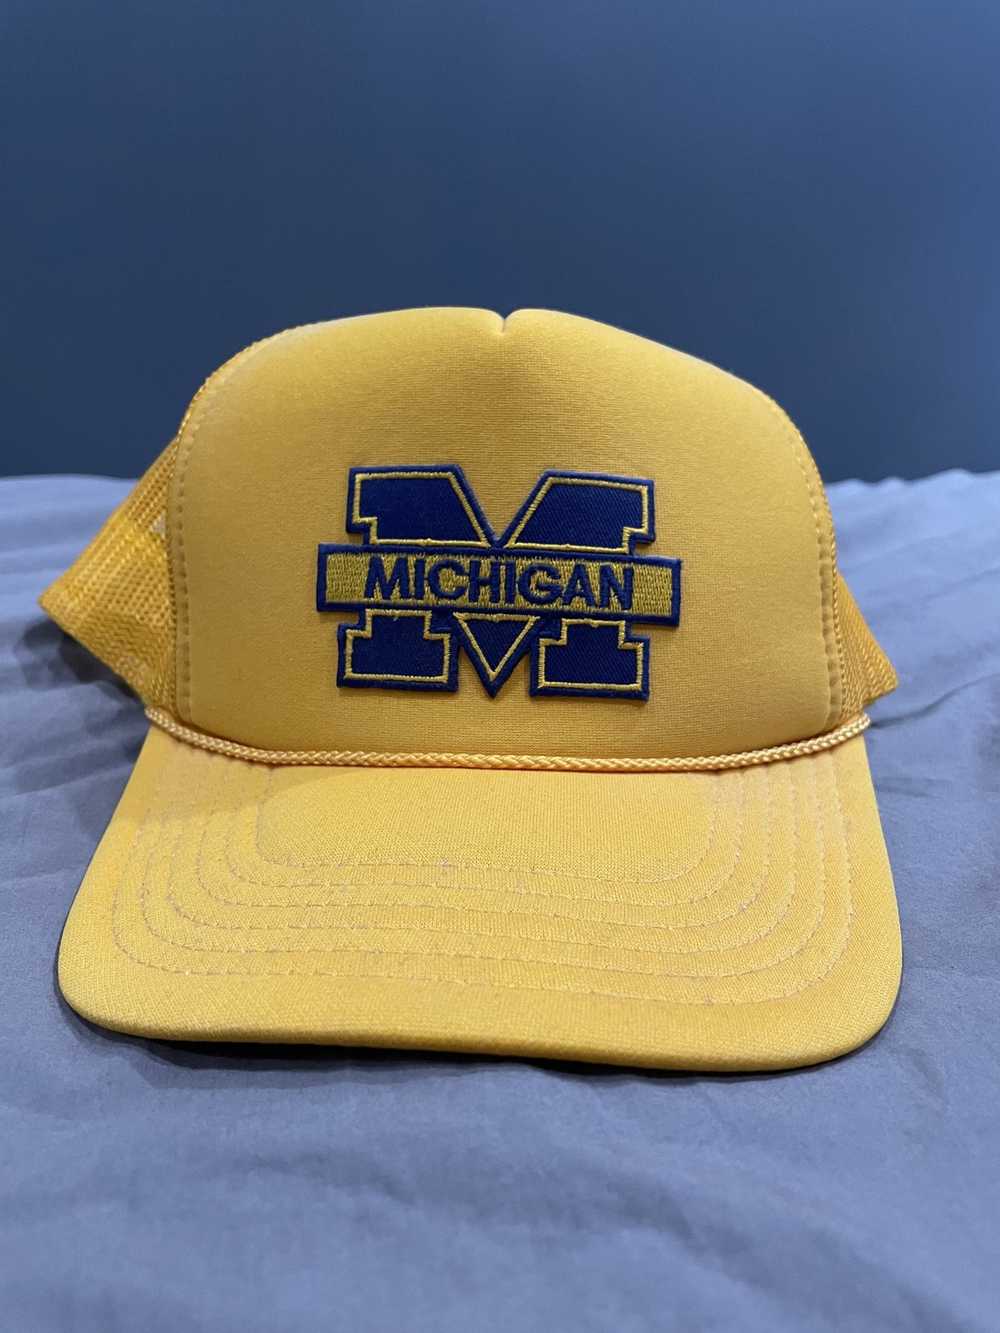 Otto Michigan Wolverines Trucker Hat - image 1